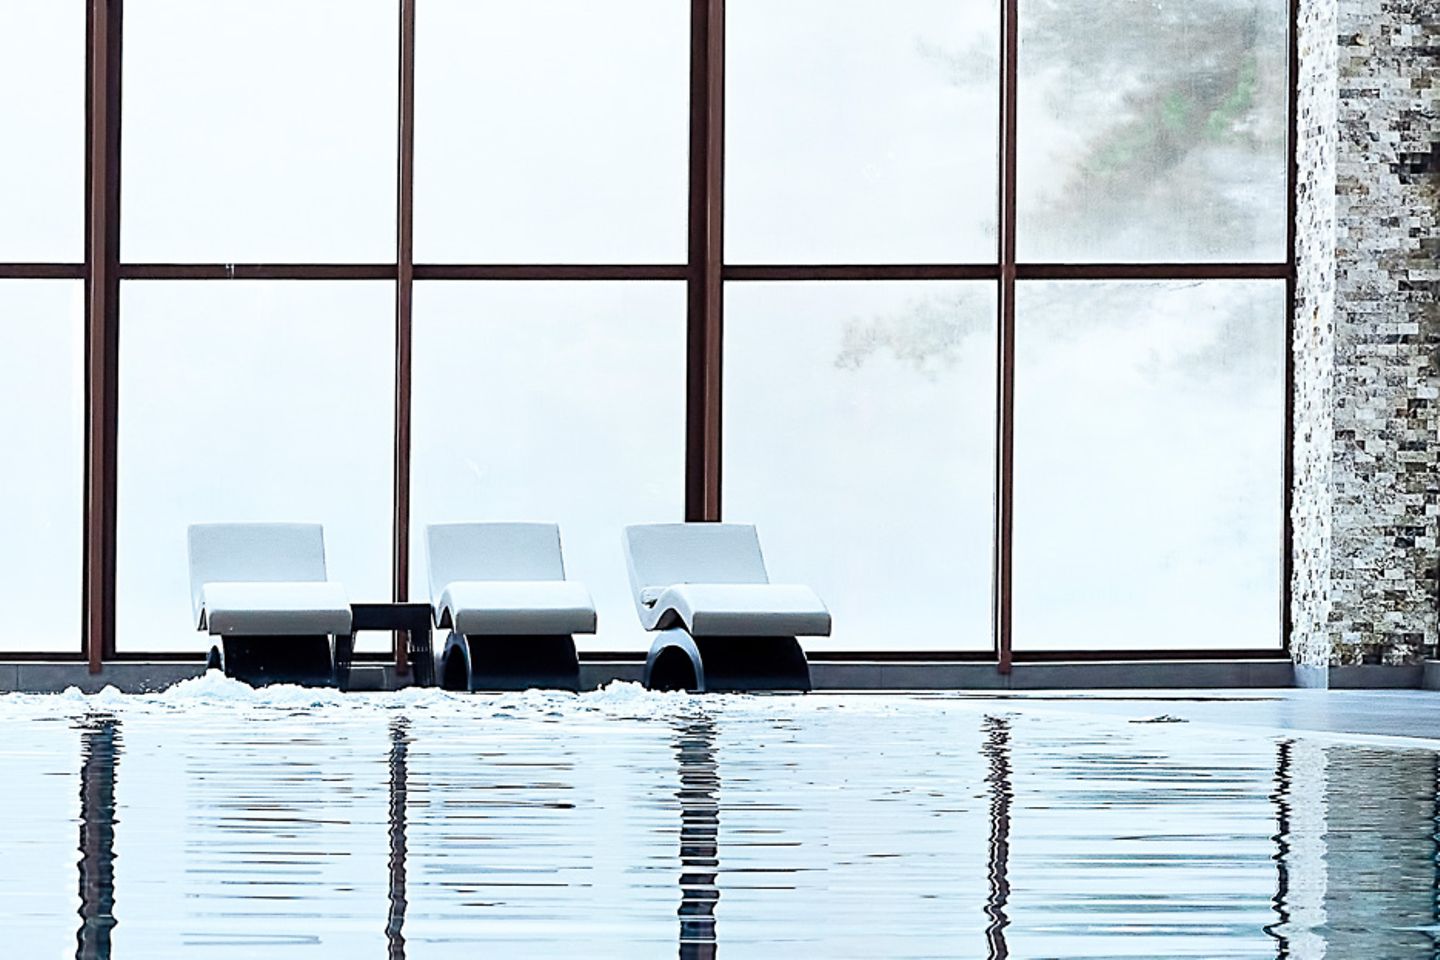 Chaises longues au bord d’une piscine couverte devant une immense baie vitrée.